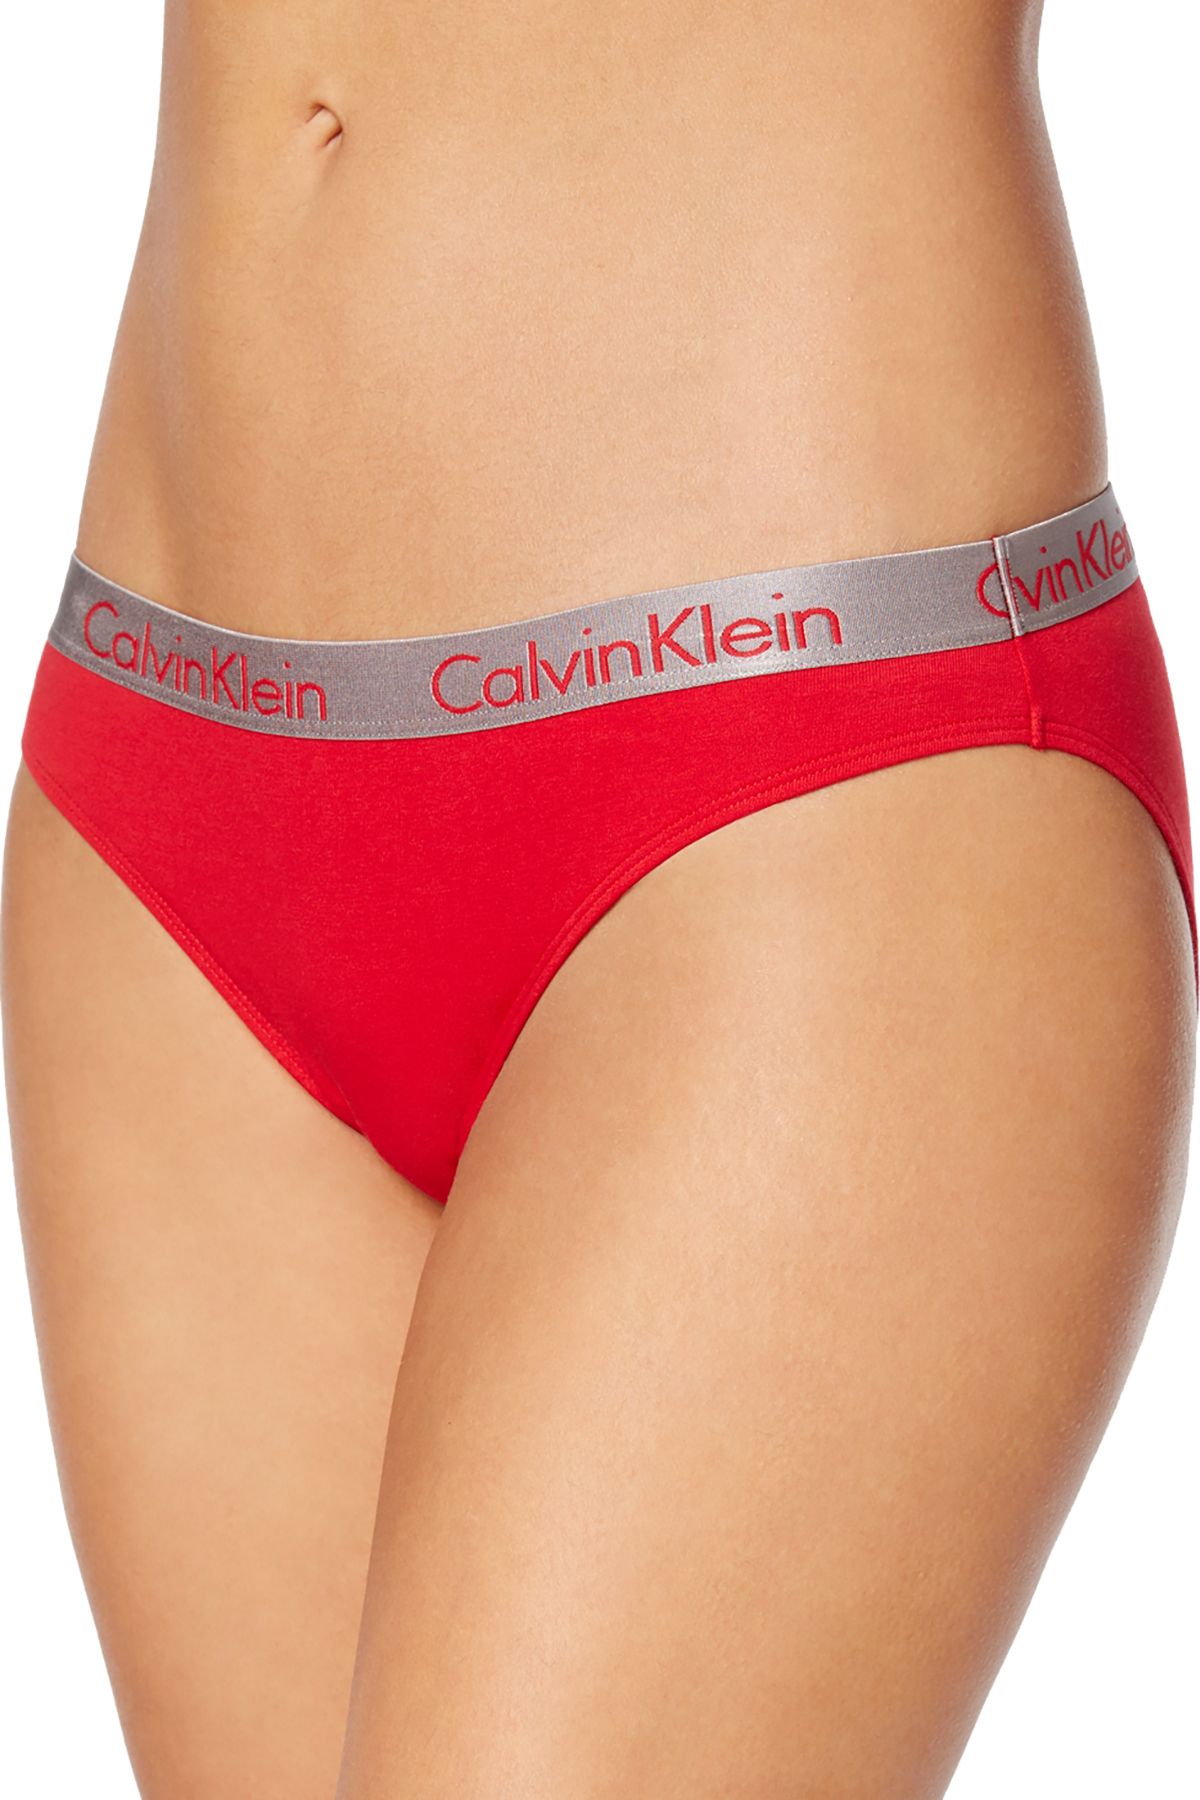 Calvin Klein Empower-Red Radiant Cotton Bikini Brief